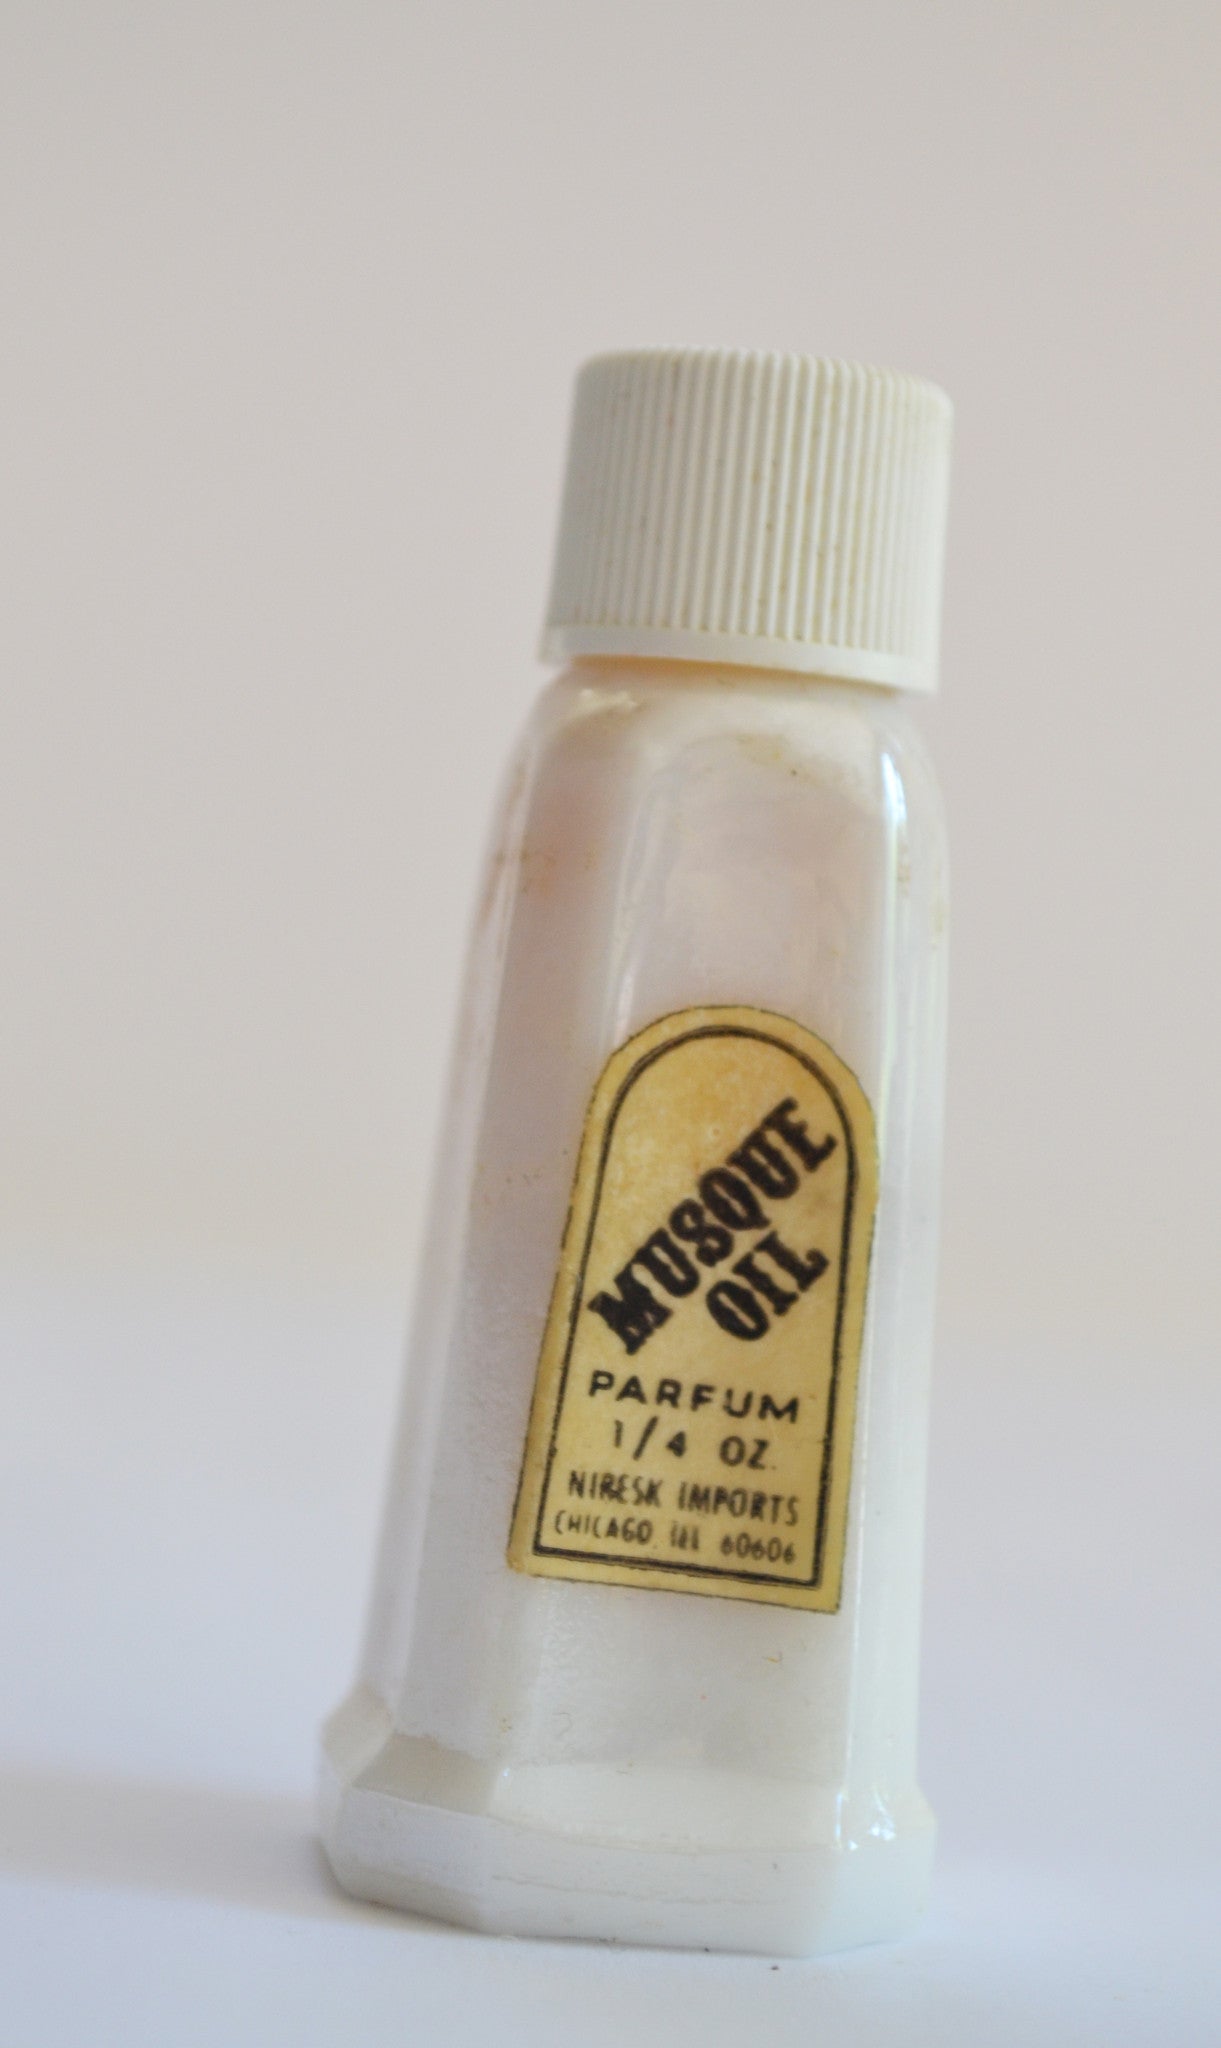 Niresk Imports Musque Parfum Oil Mini